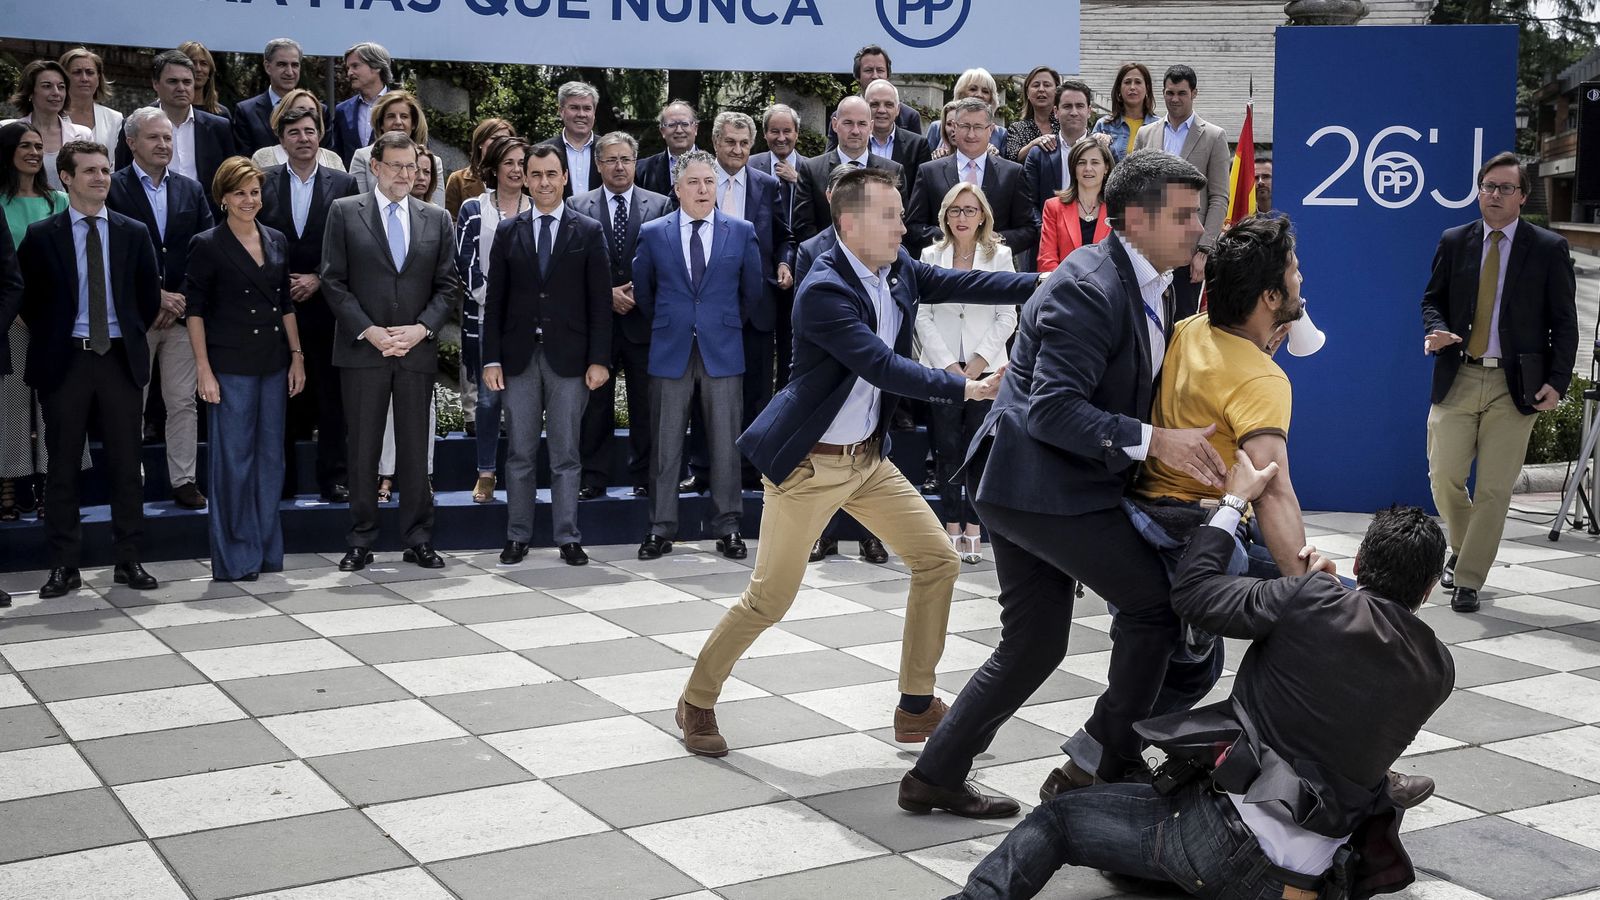 Foto: Los servicios de seguridad reducen a un hombre que irrumpió gritando "sois la mafia" cuando Mariano Rajoy participaba en el acto de presentación de los cabezas de lista del PP. (EFE)